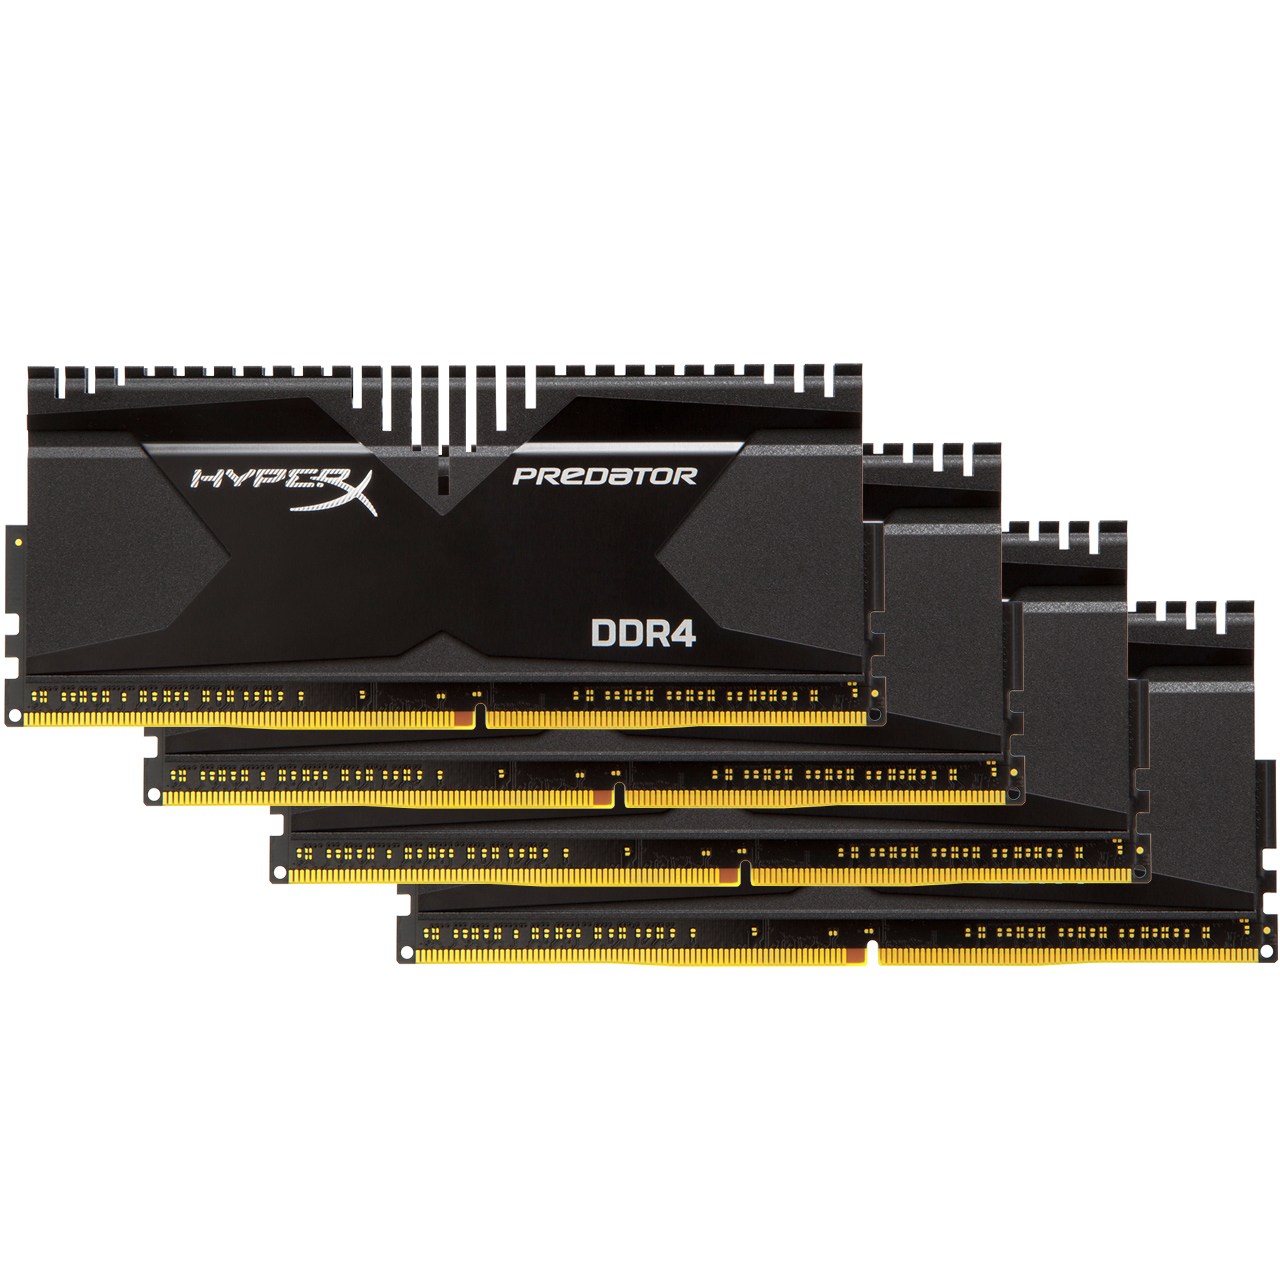 رم دسکتاپ DDR4 چهار کاناله 3000 مگاهرتز CL15 کینگستون مدل HyperX Predator ظرفیت 32 گیگابایت